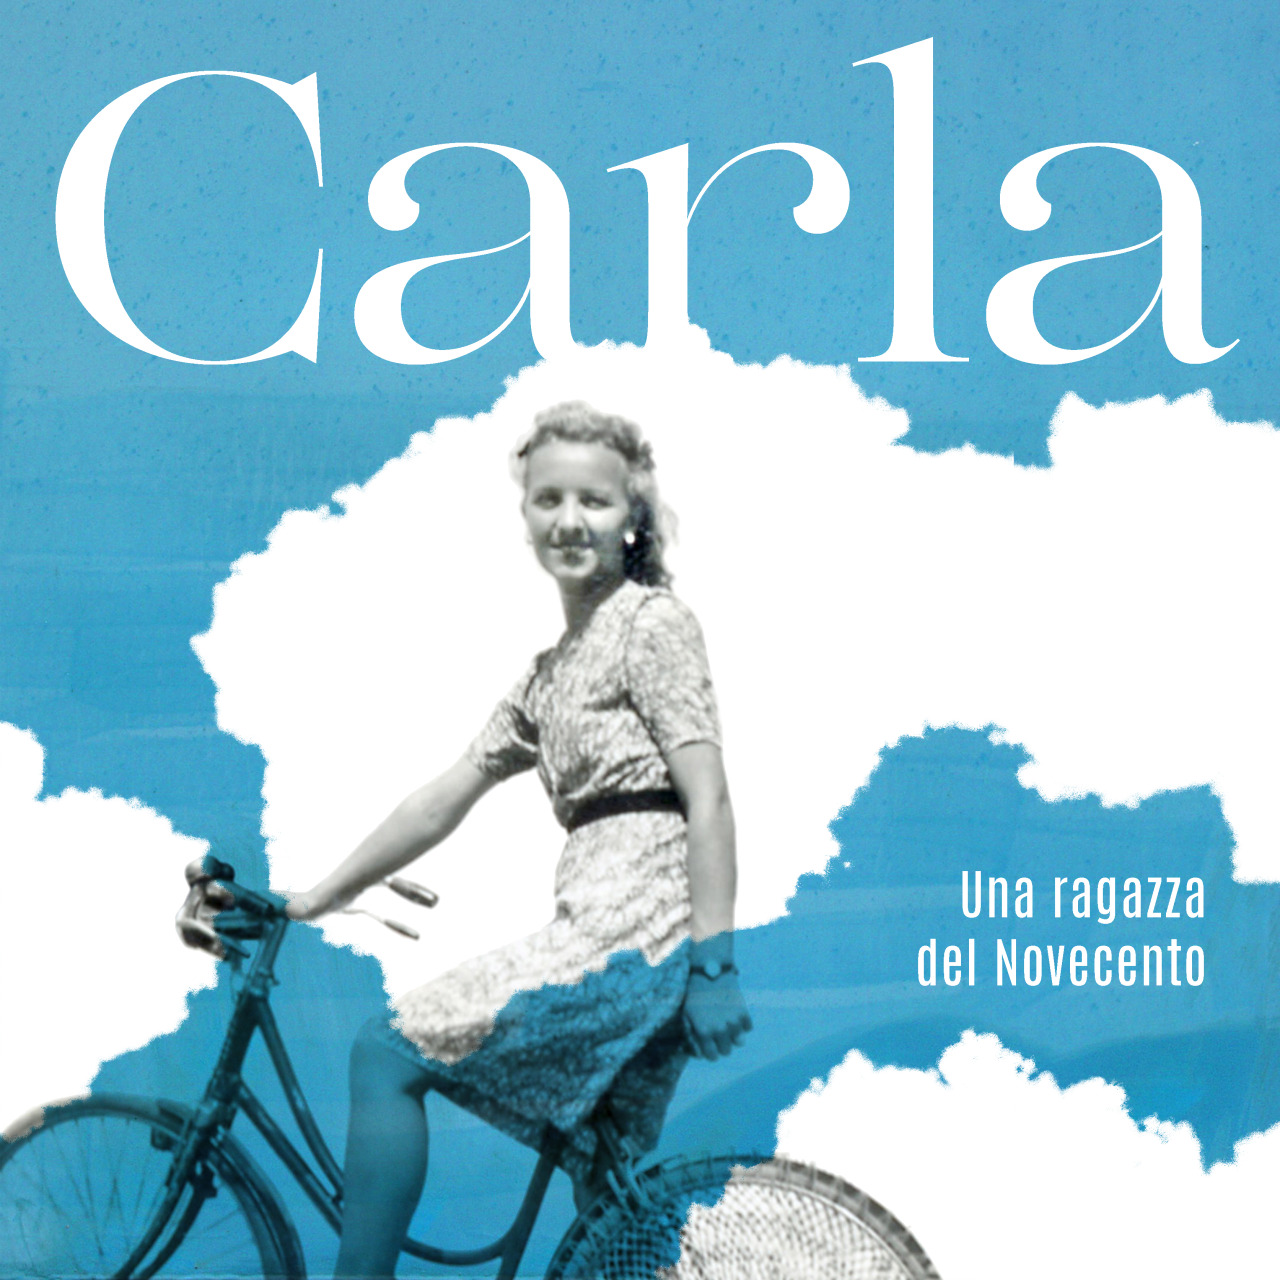 Carla, una ragazza del Novecento